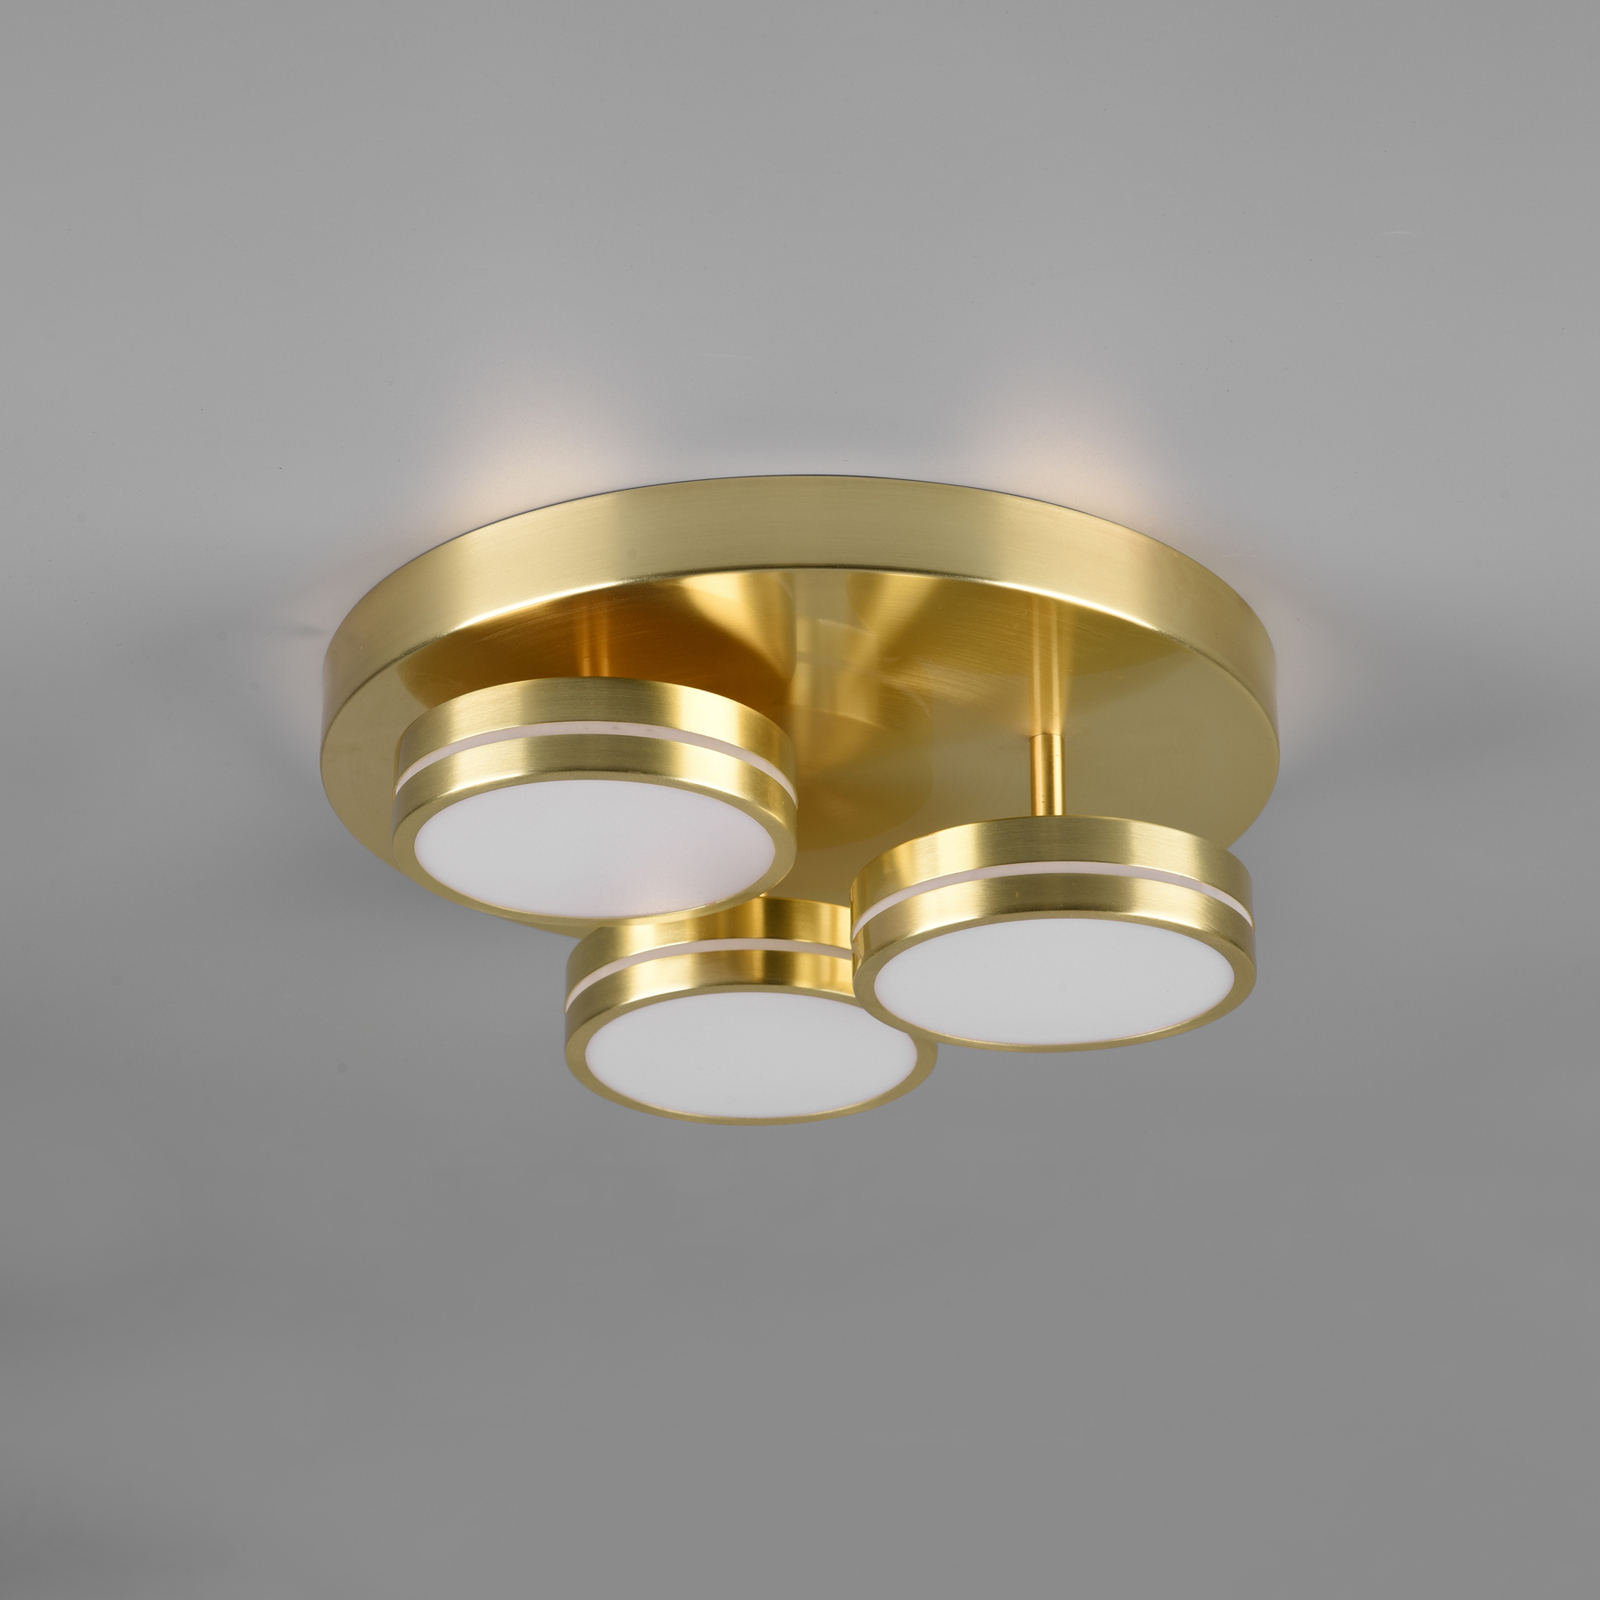 LED ceiling lamp Franklin 3-bulb brass matt